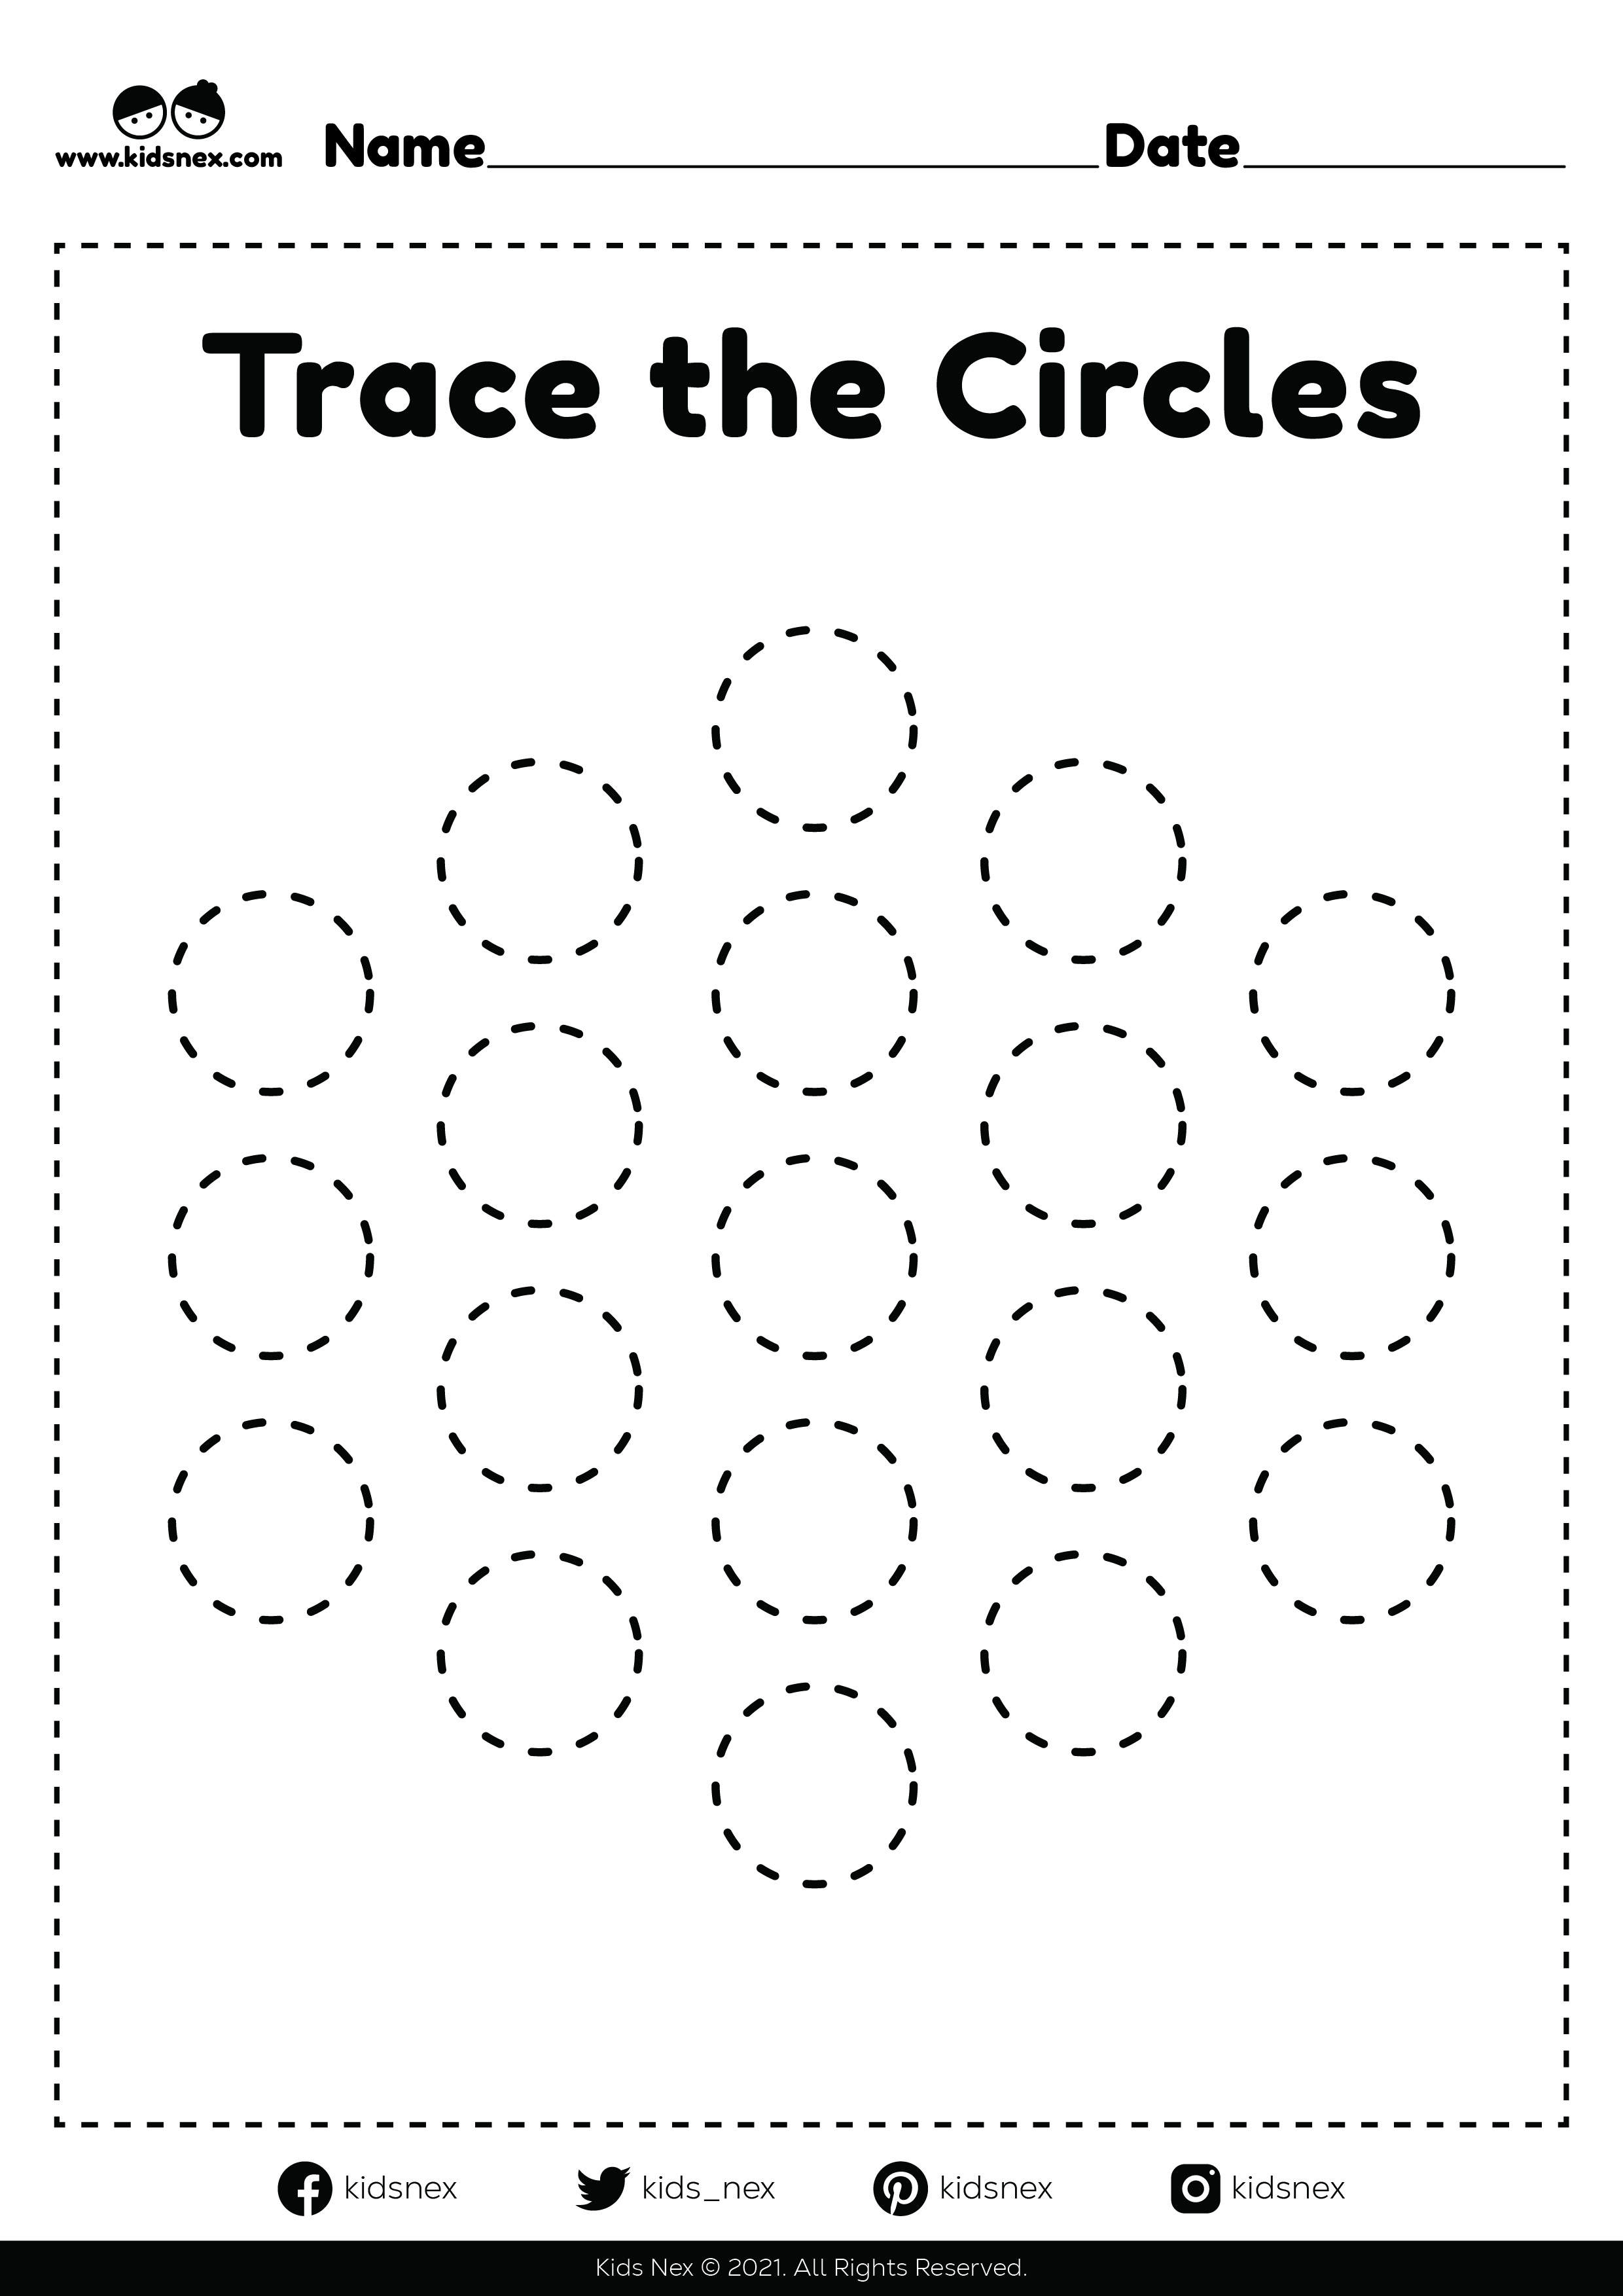 tracing-circles-worksheet-free-printable-kids-nex